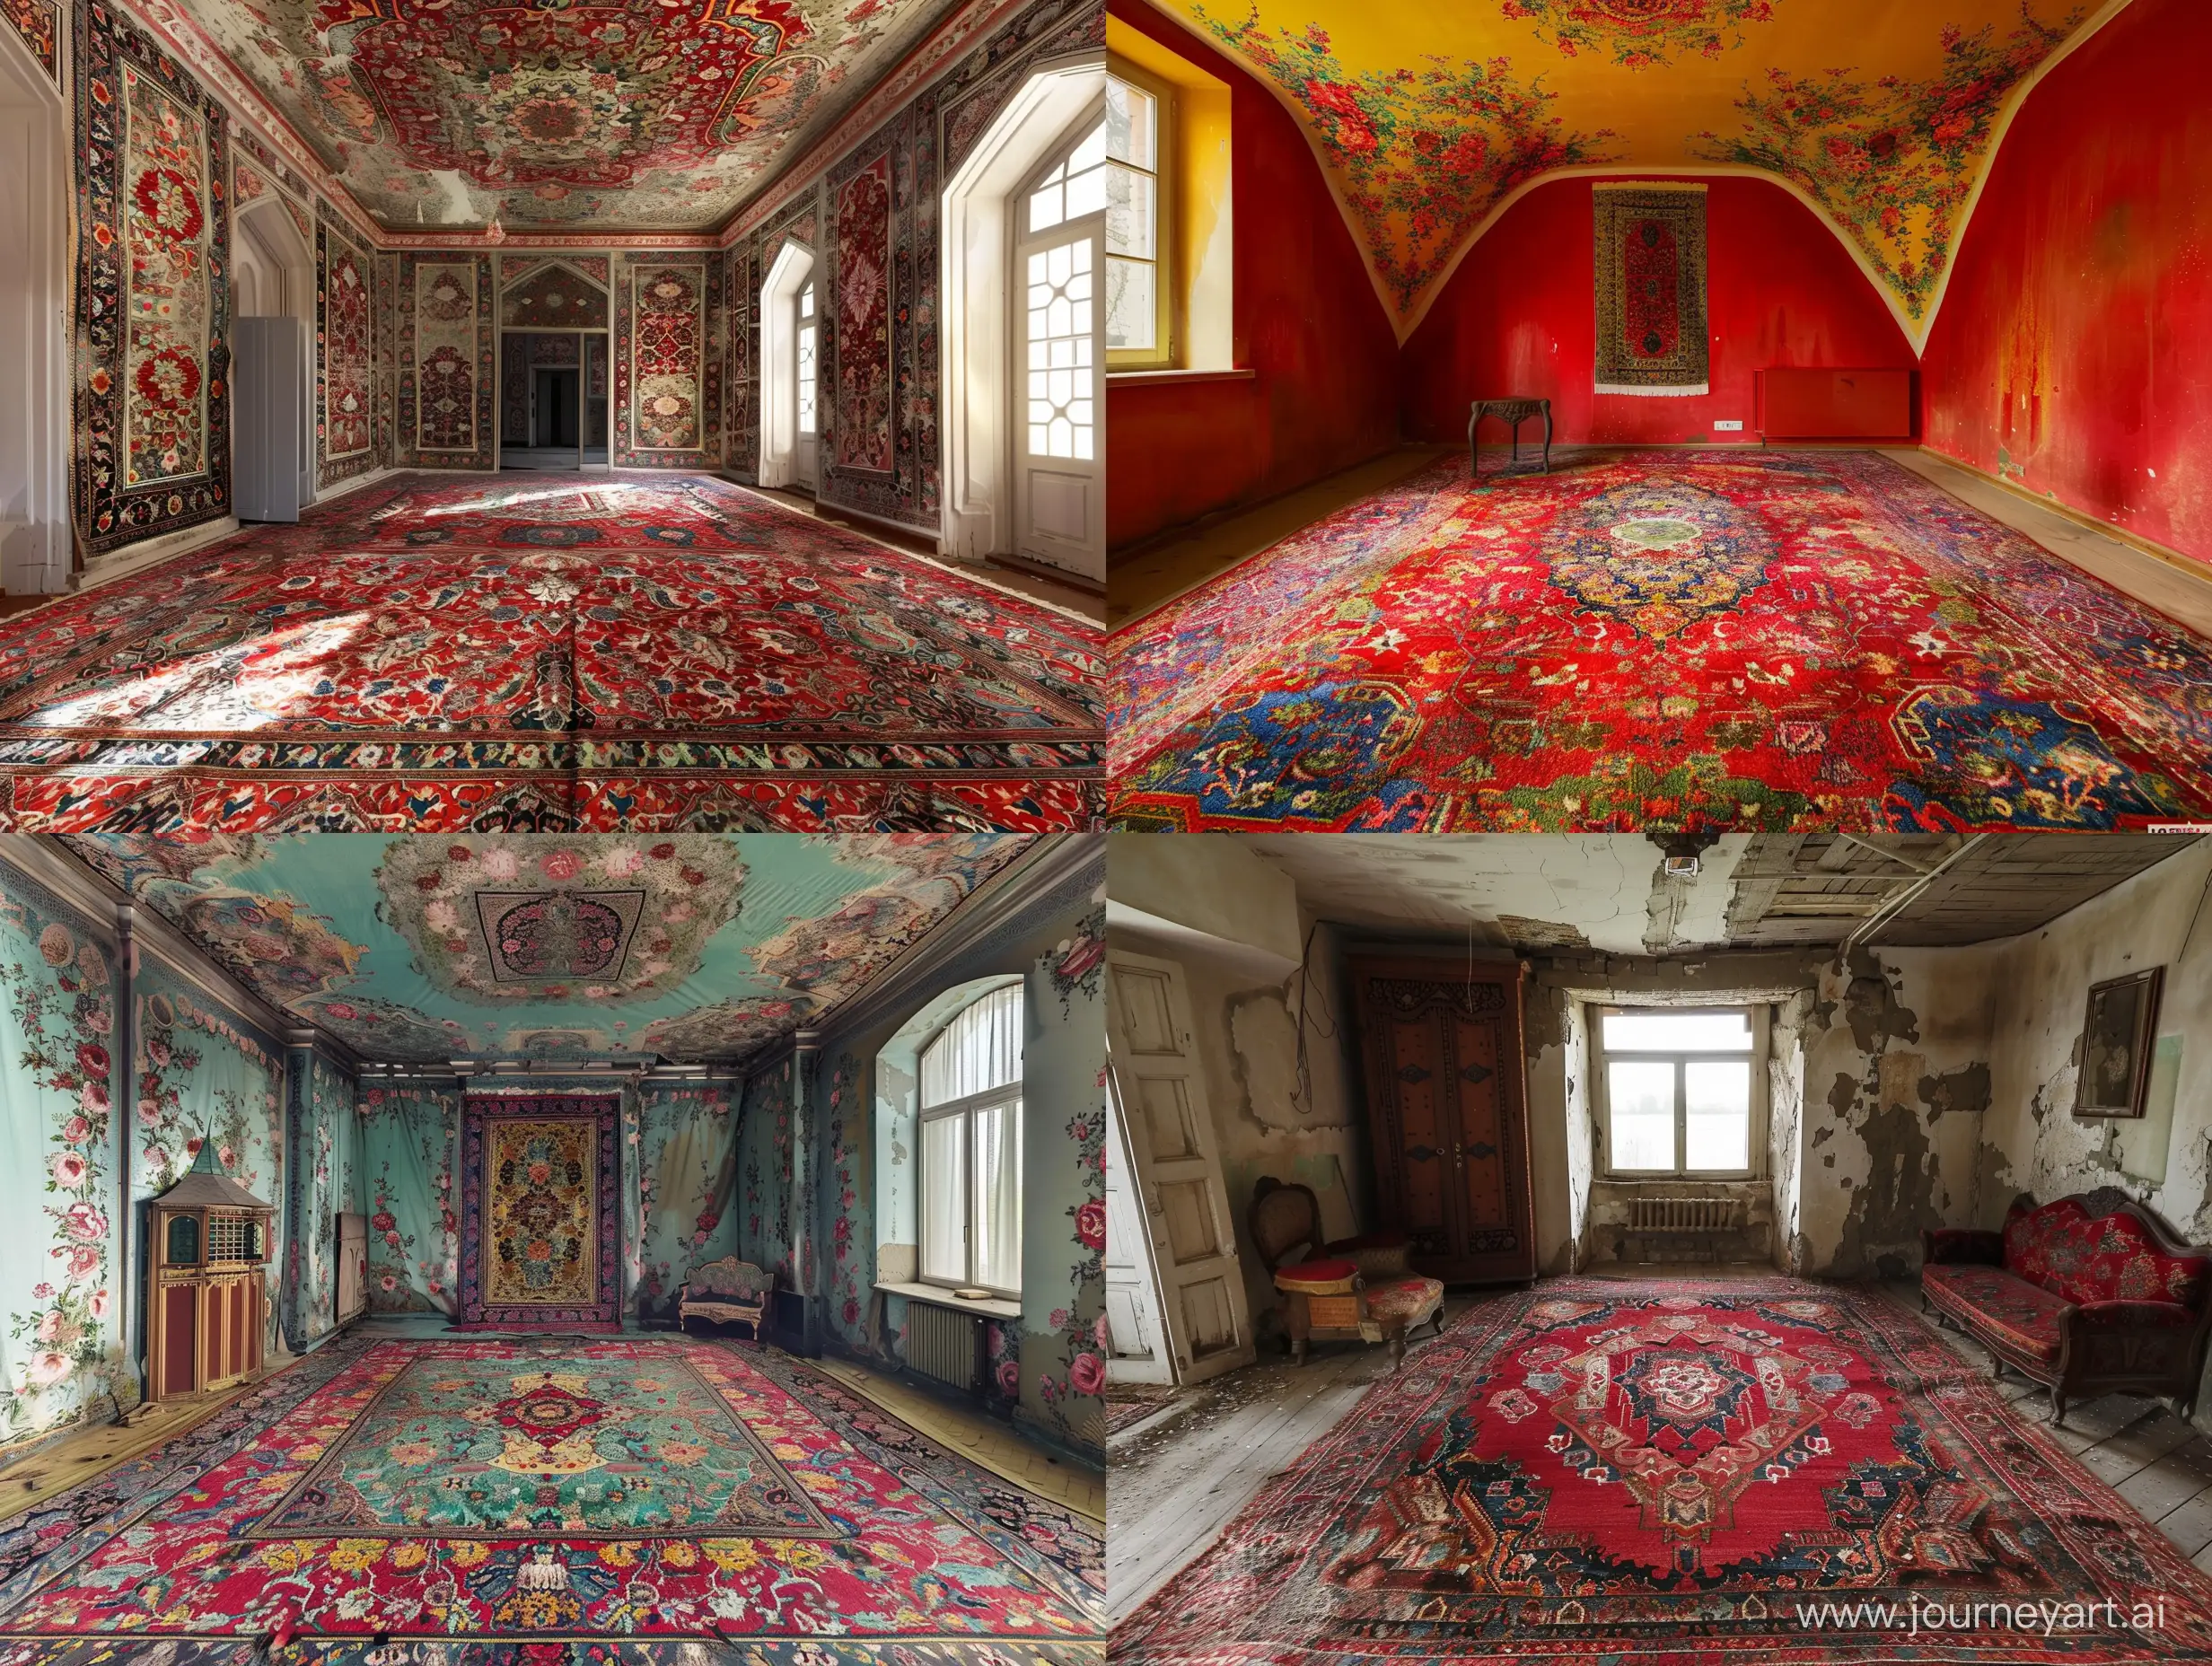 A room looks like an iranian carpet